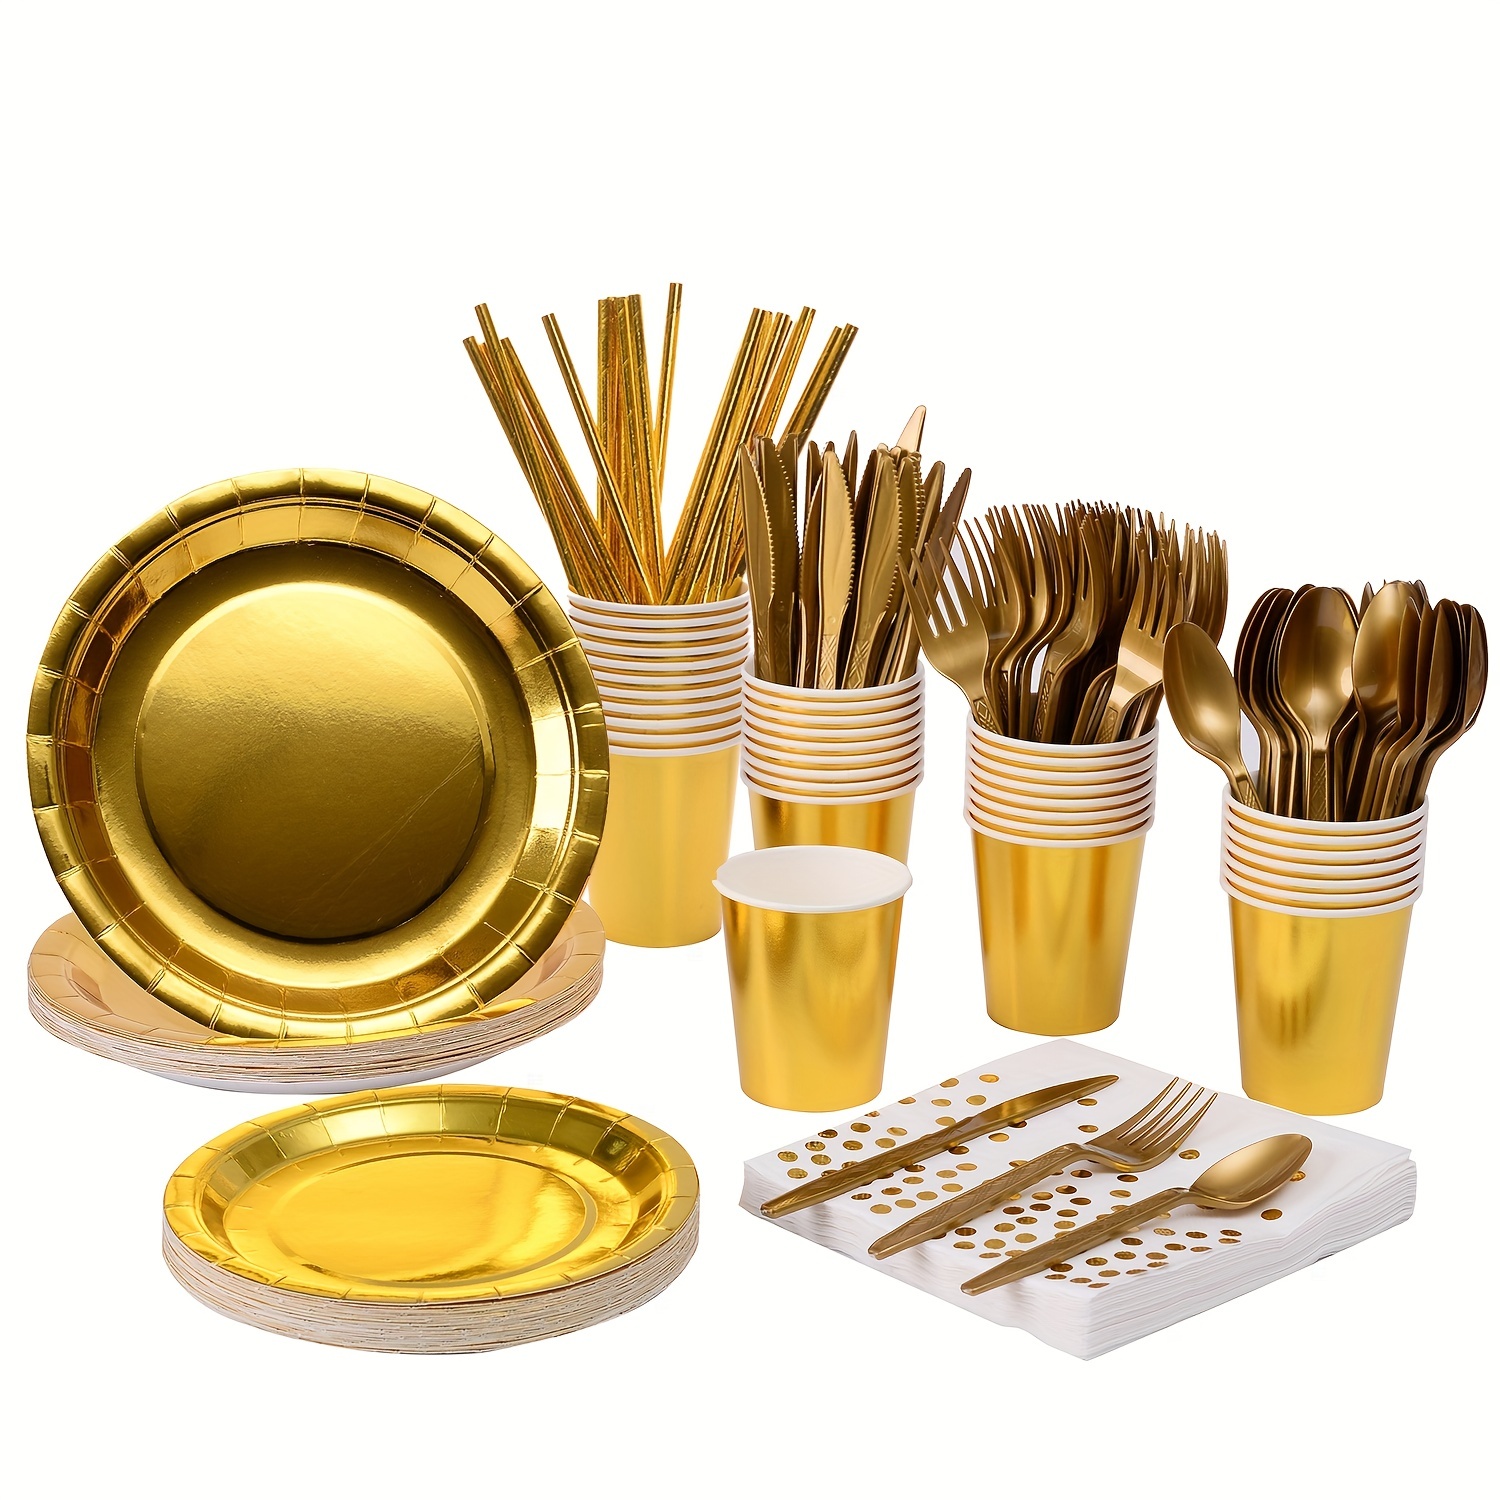 Suministros de fiesta blancos y dorados, juego de vajilla desechable de 350  piezas con platos de papel, platos de postre, servilletas, vasos